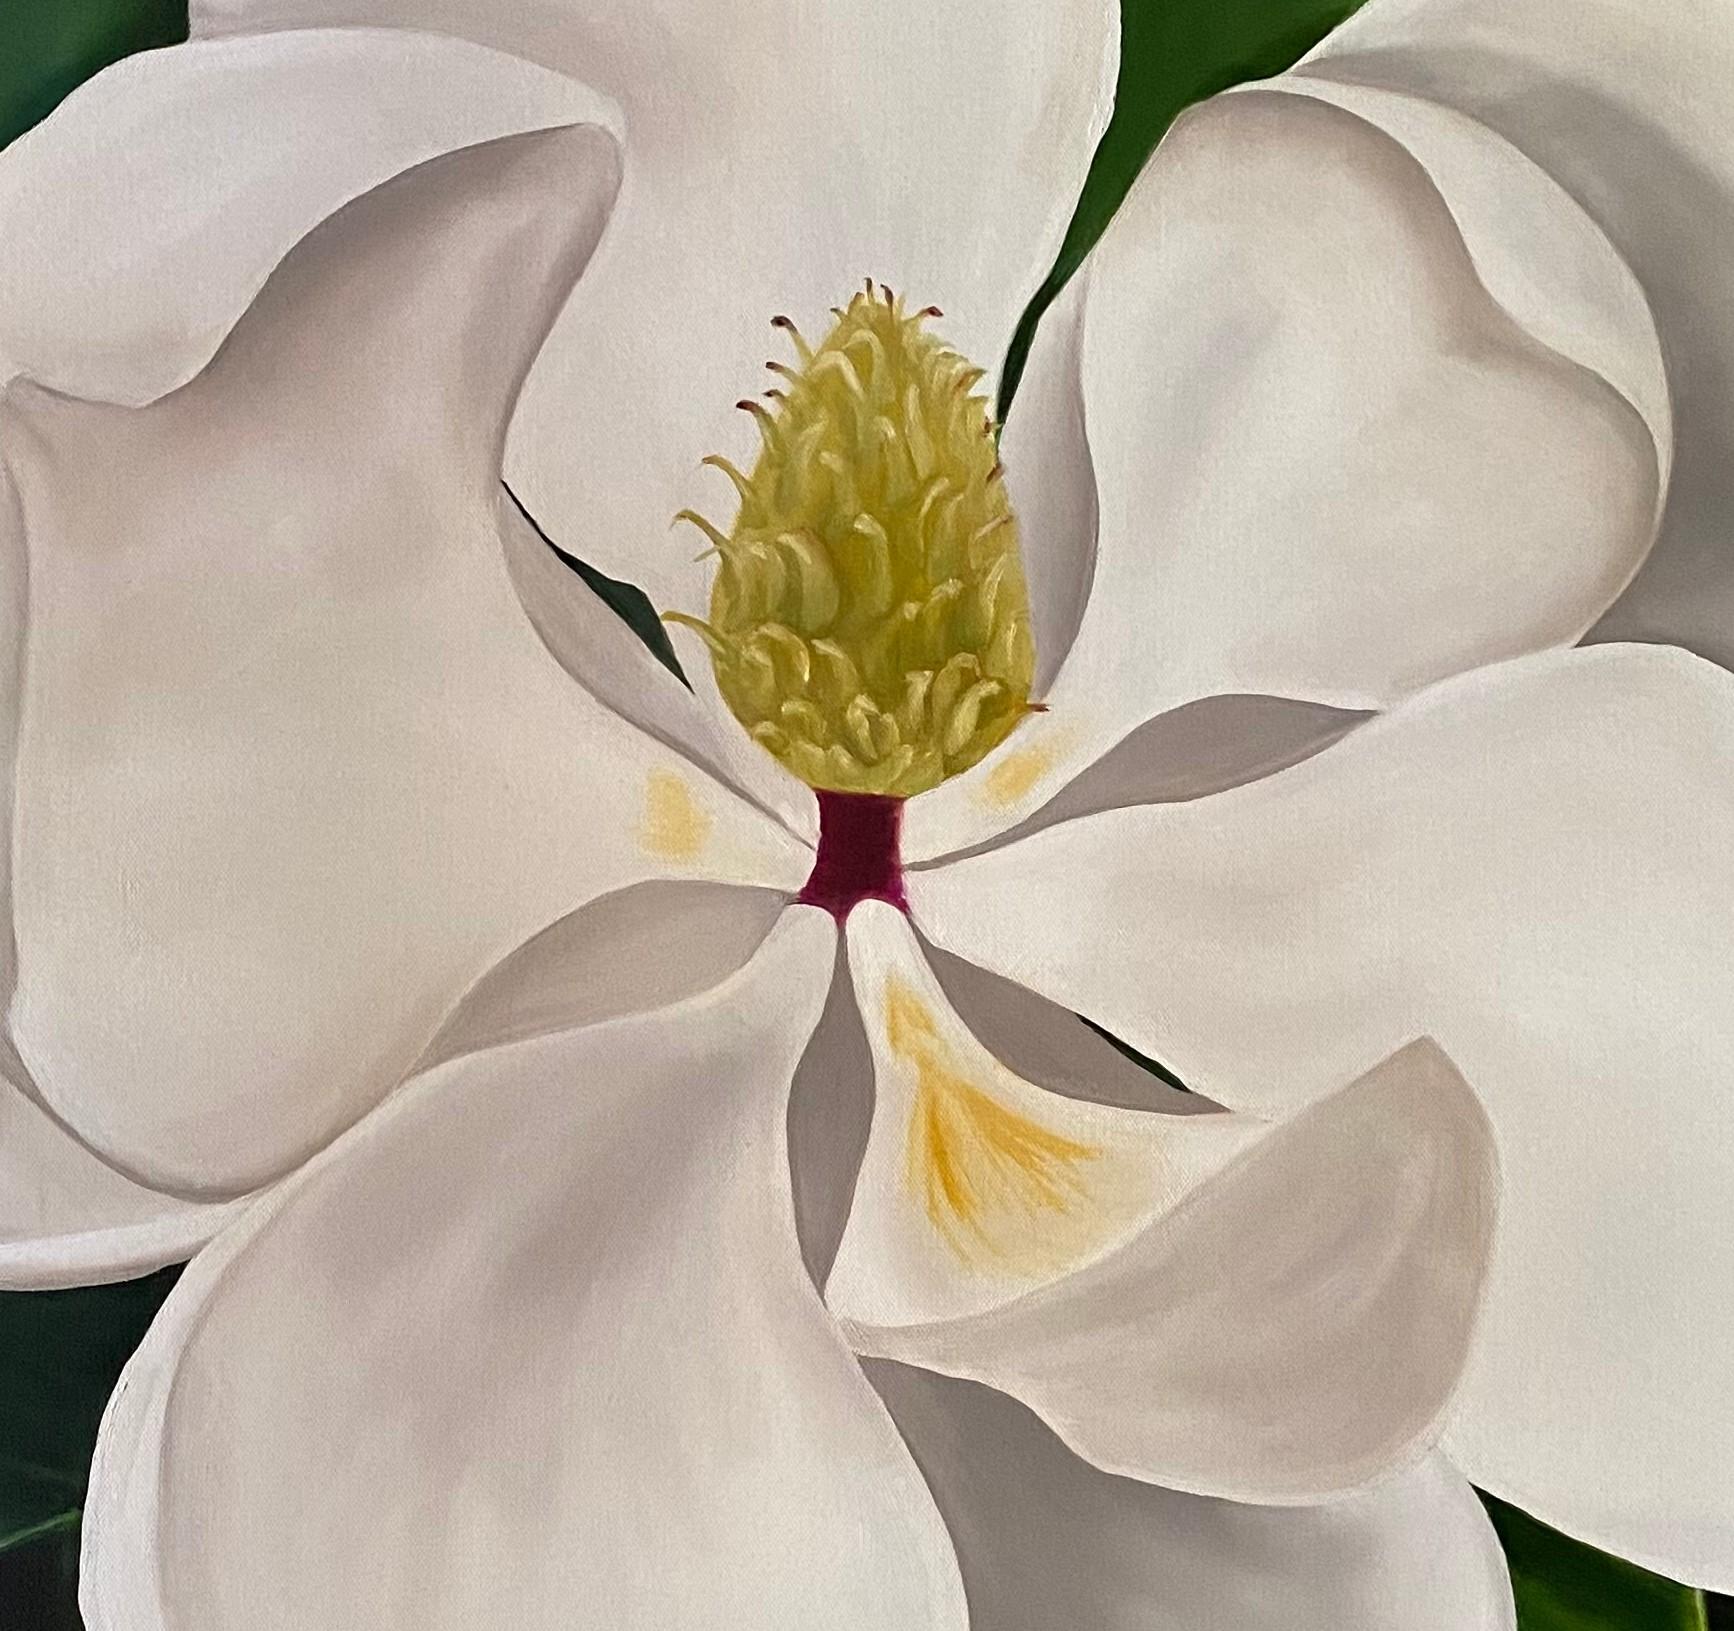 Susan est originaire de Houston. Elle est passionnée par la peinture à l'huile et se spécialise dans les fleurs à grande échelle. C'est en photographiant des fleurs lors de ses promenades quotidiennes qu'elle a eu l'idée de commencer à peindre des